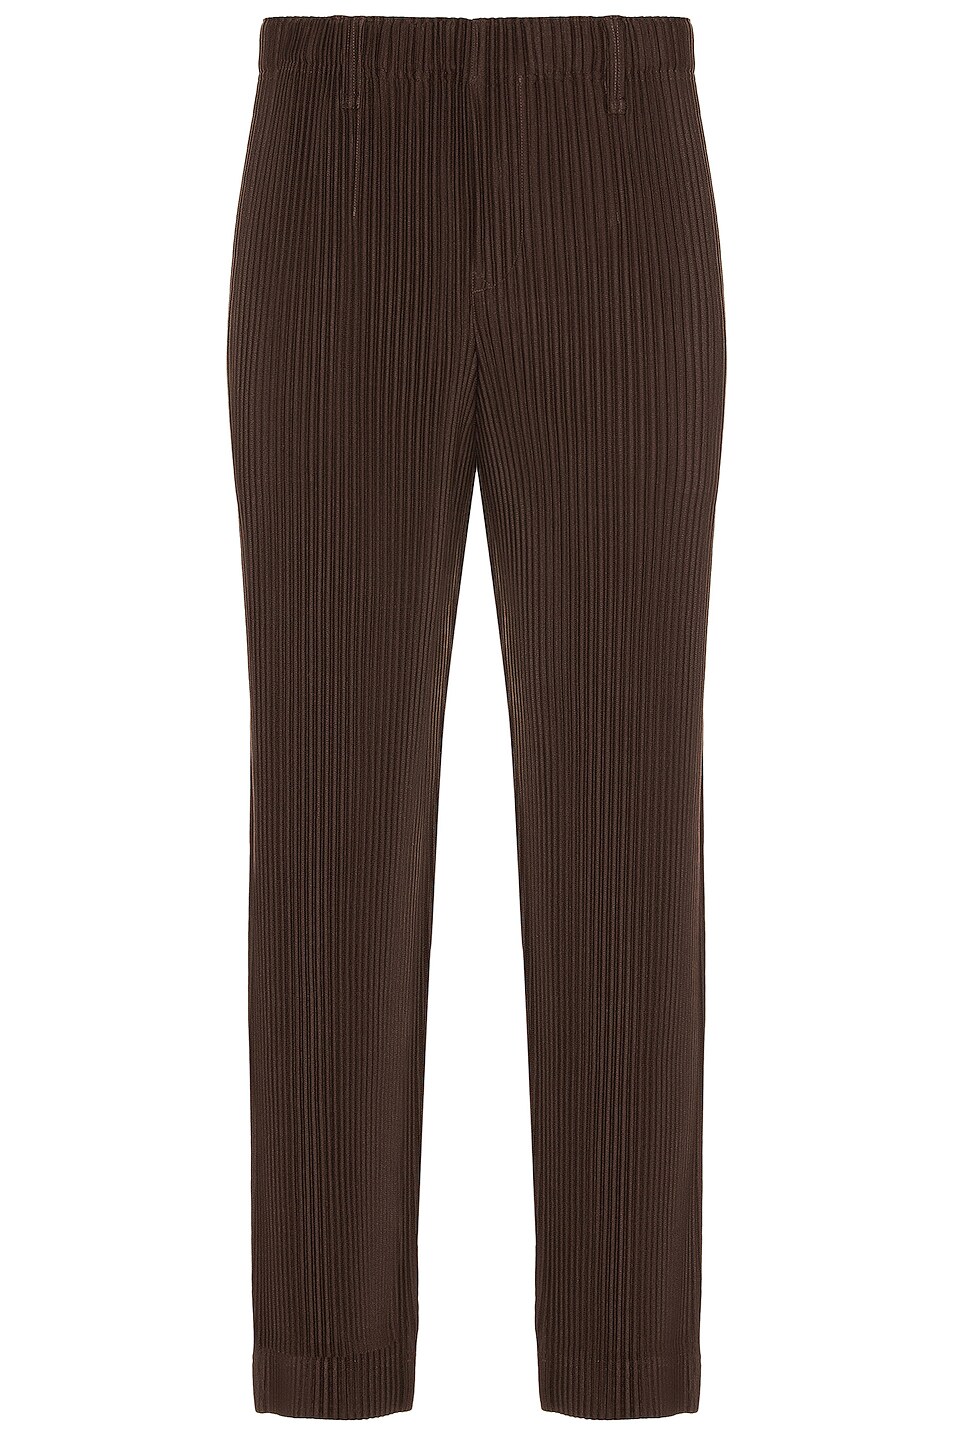 Image 1 of Homme Plisse Issey Miyake Pants in Brown